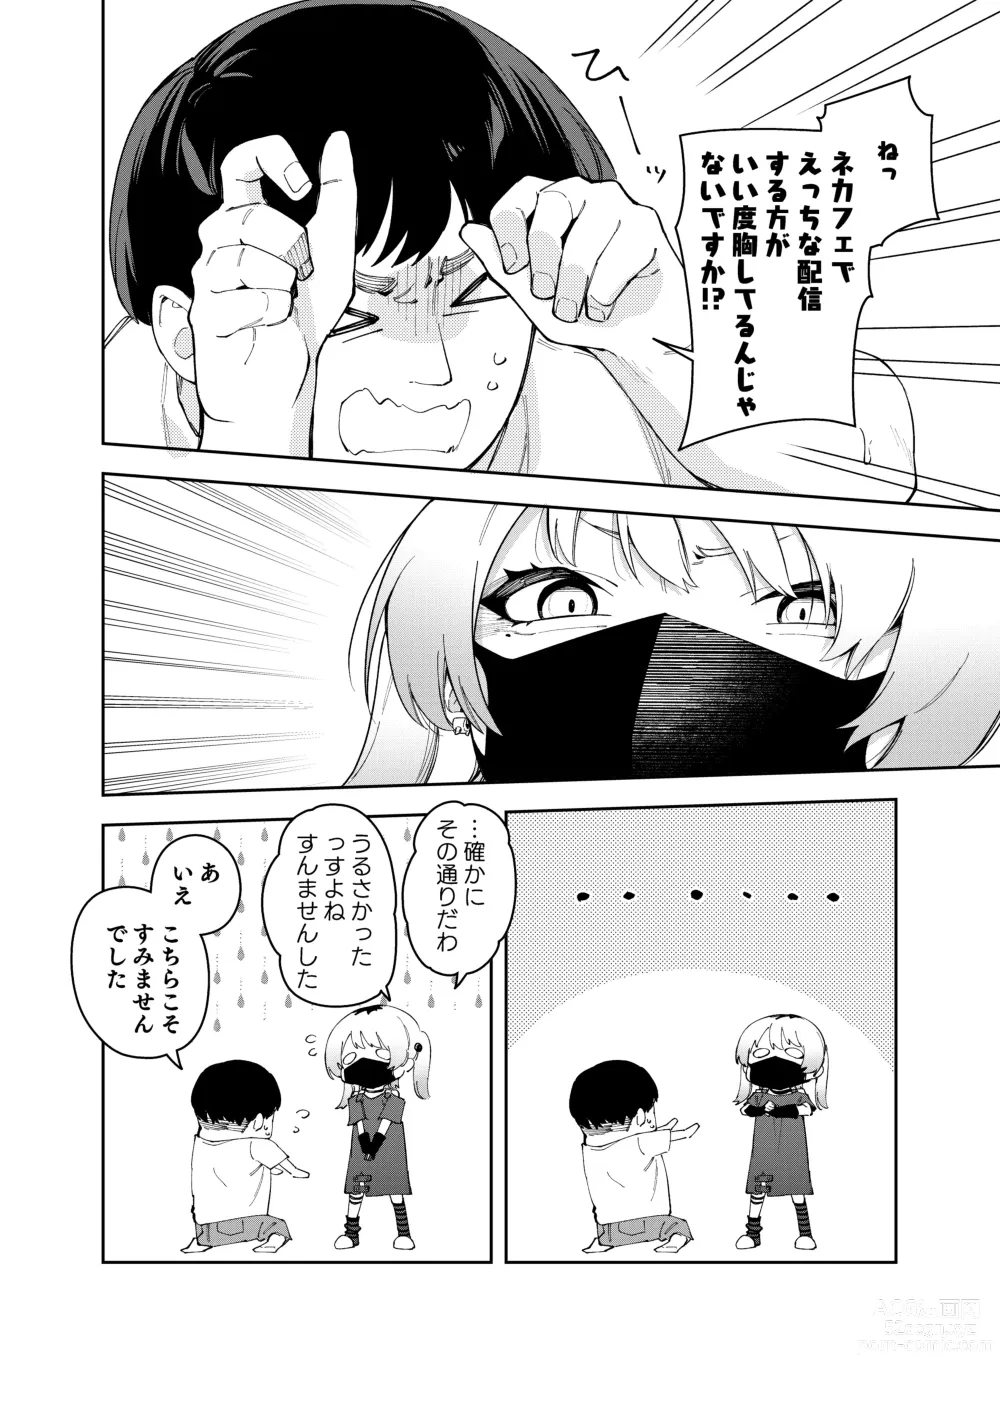 Page 14 of doujinshi Rinjin wa Yuumei Haishinsha 4-ninme